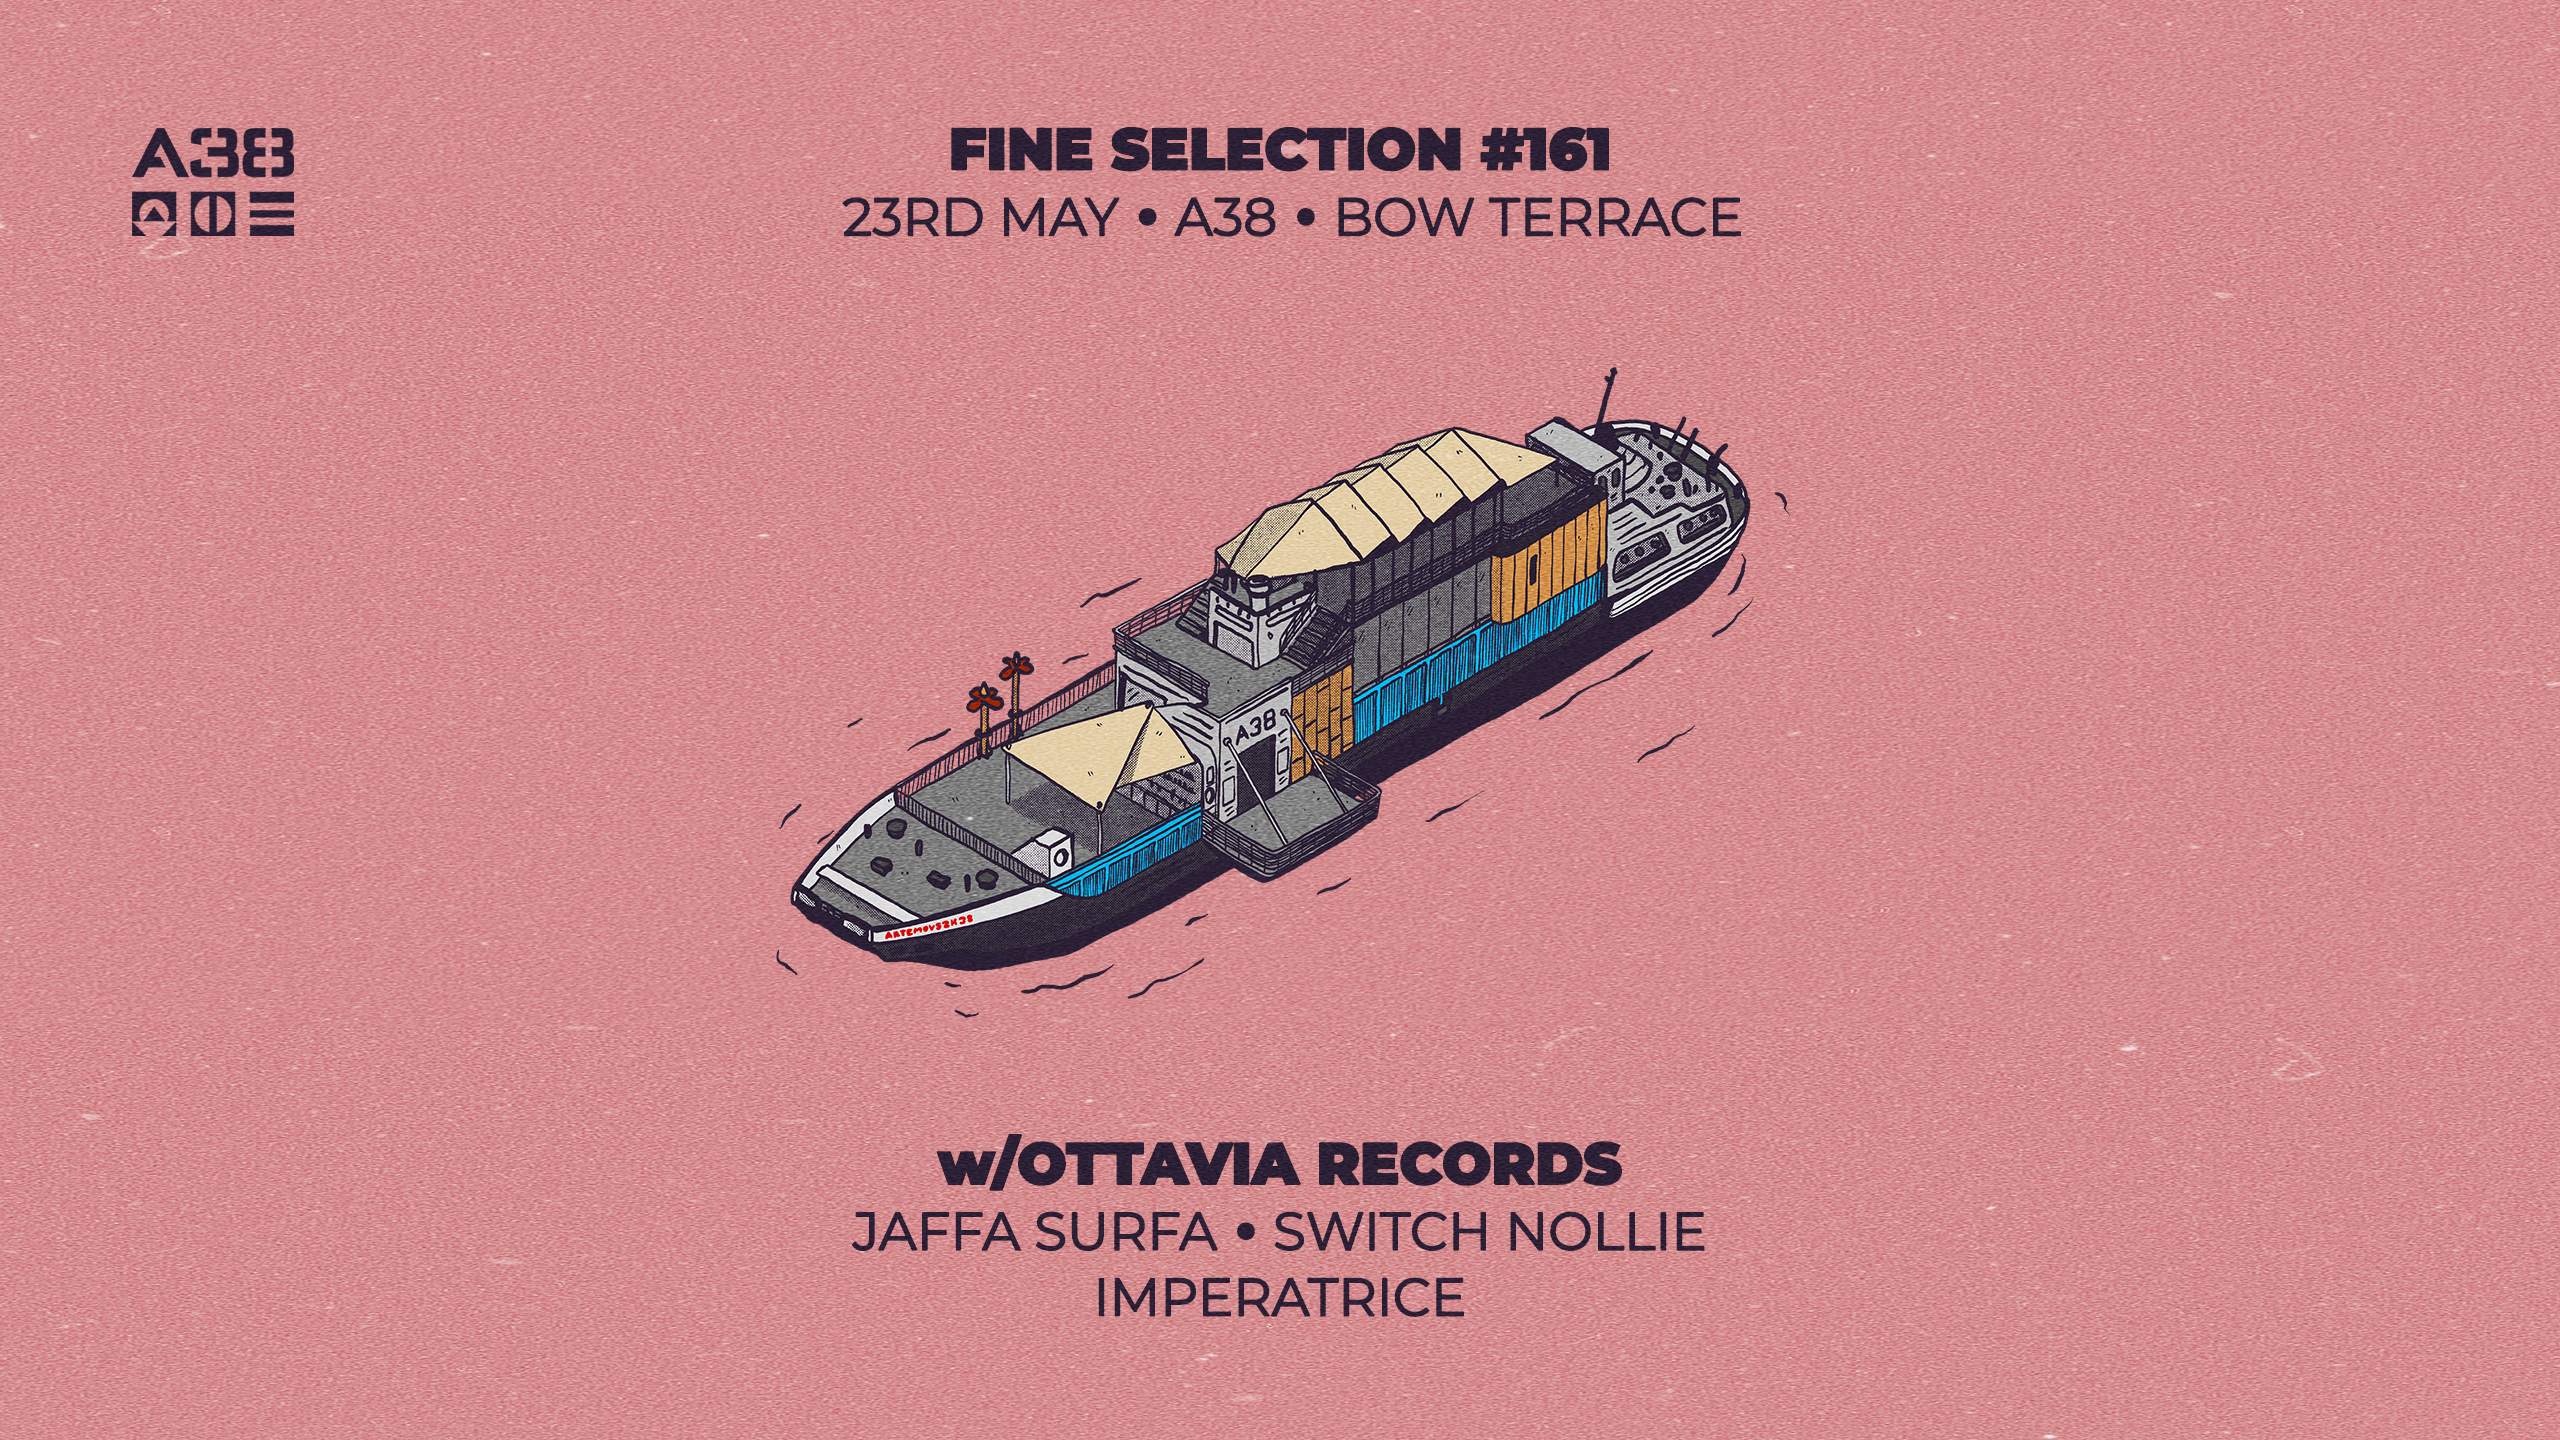 Fine Selection #161 w/Ottavia Records - フライヤー表